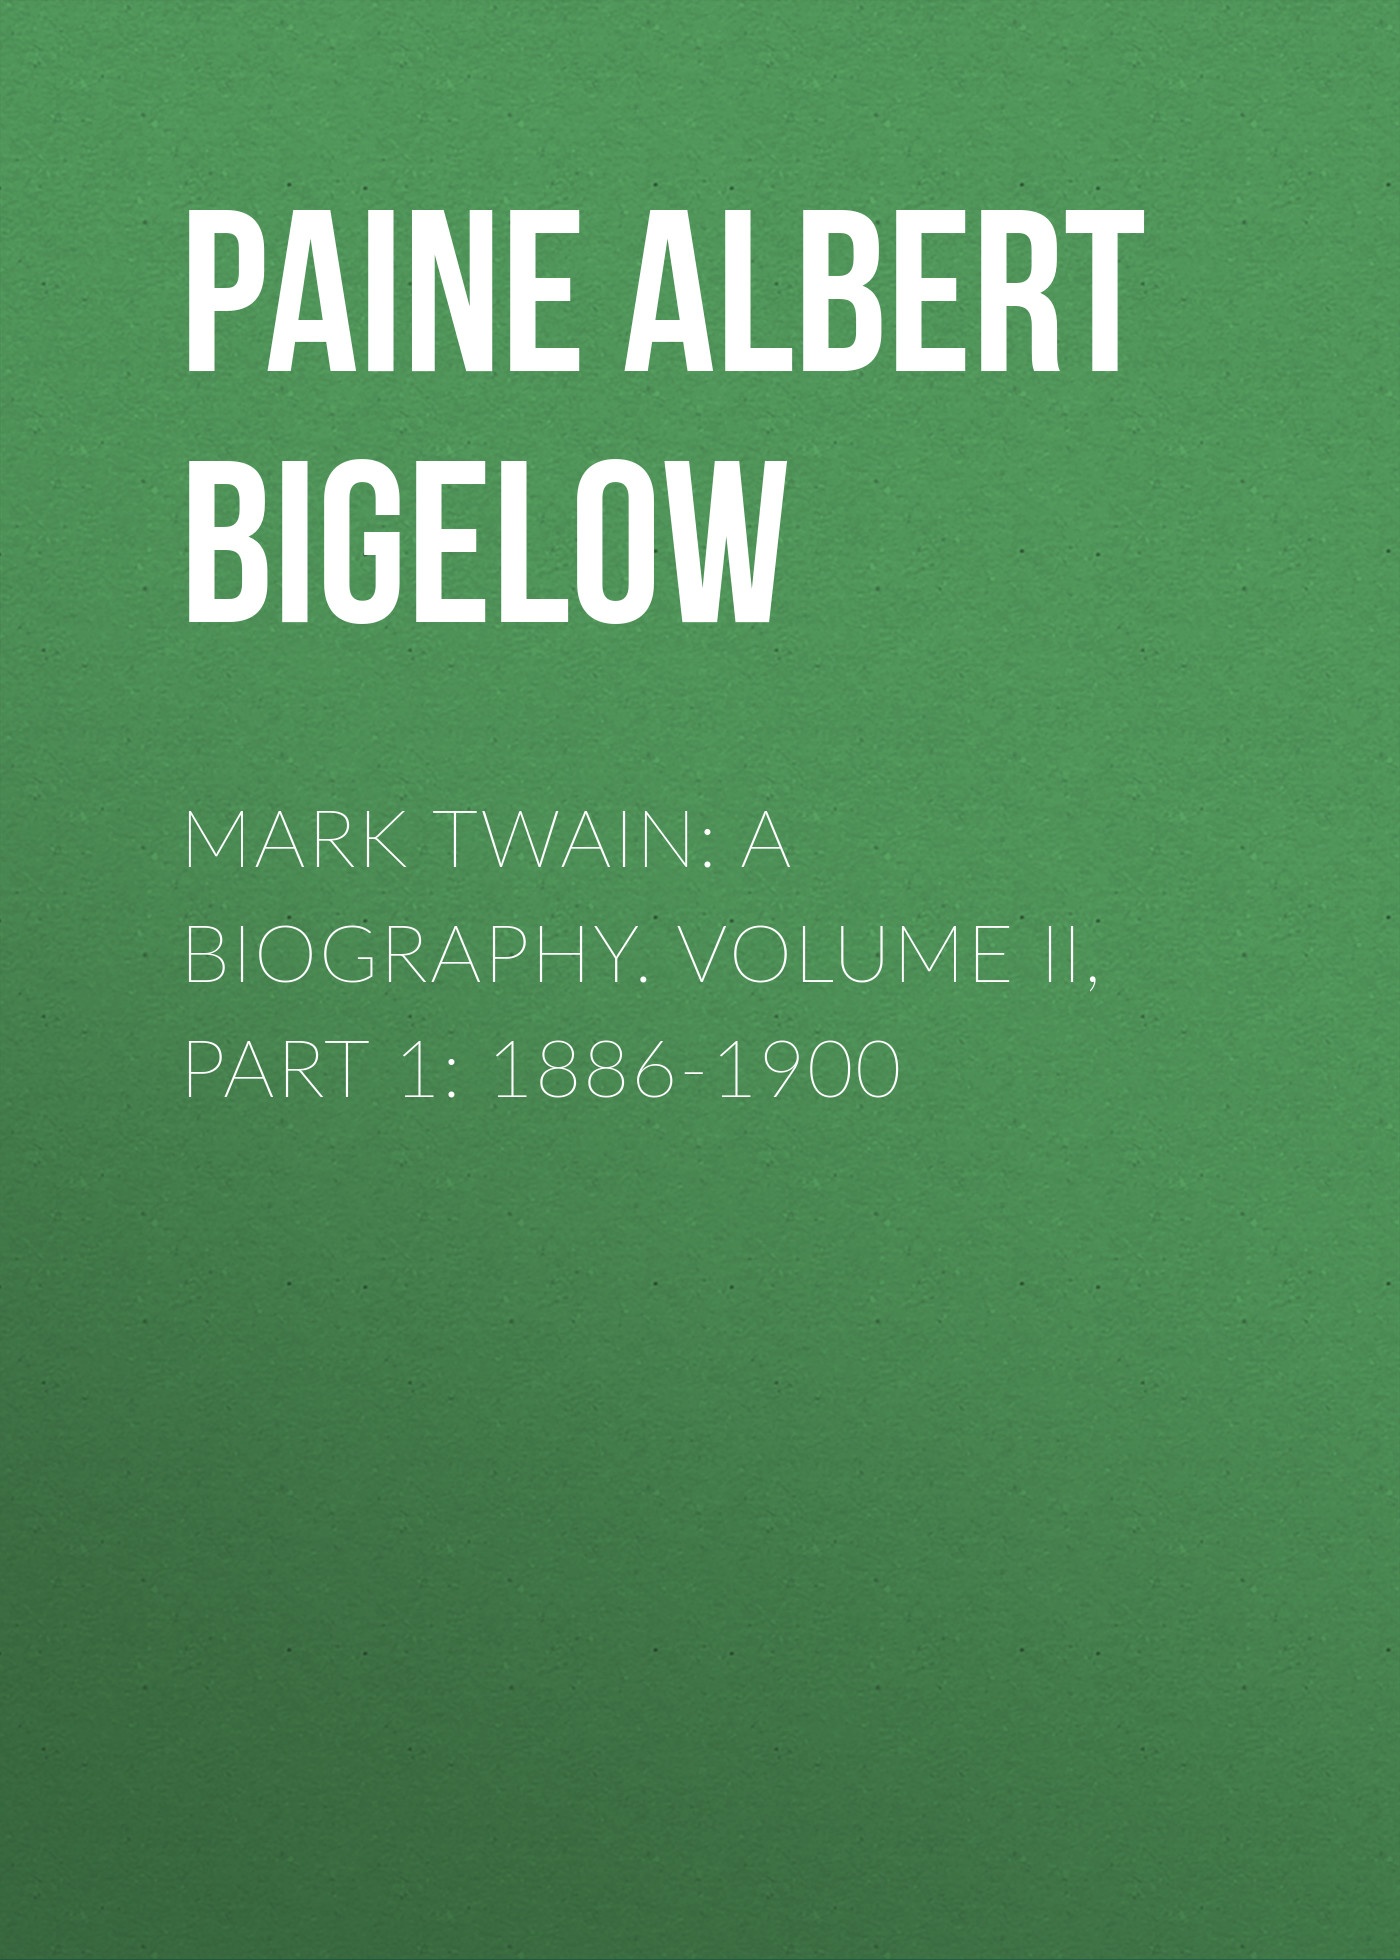 Книга Mark Twain: A Biography. Volume II, Part 1: 1886-1900 из серии , созданная Albert Paine, может относится к жанру Биографии и Мемуары, Зарубежная старинная литература. Стоимость электронной книги Mark Twain: A Biography. Volume II, Part 1: 1886-1900 с идентификатором 34840454 составляет 0 руб.